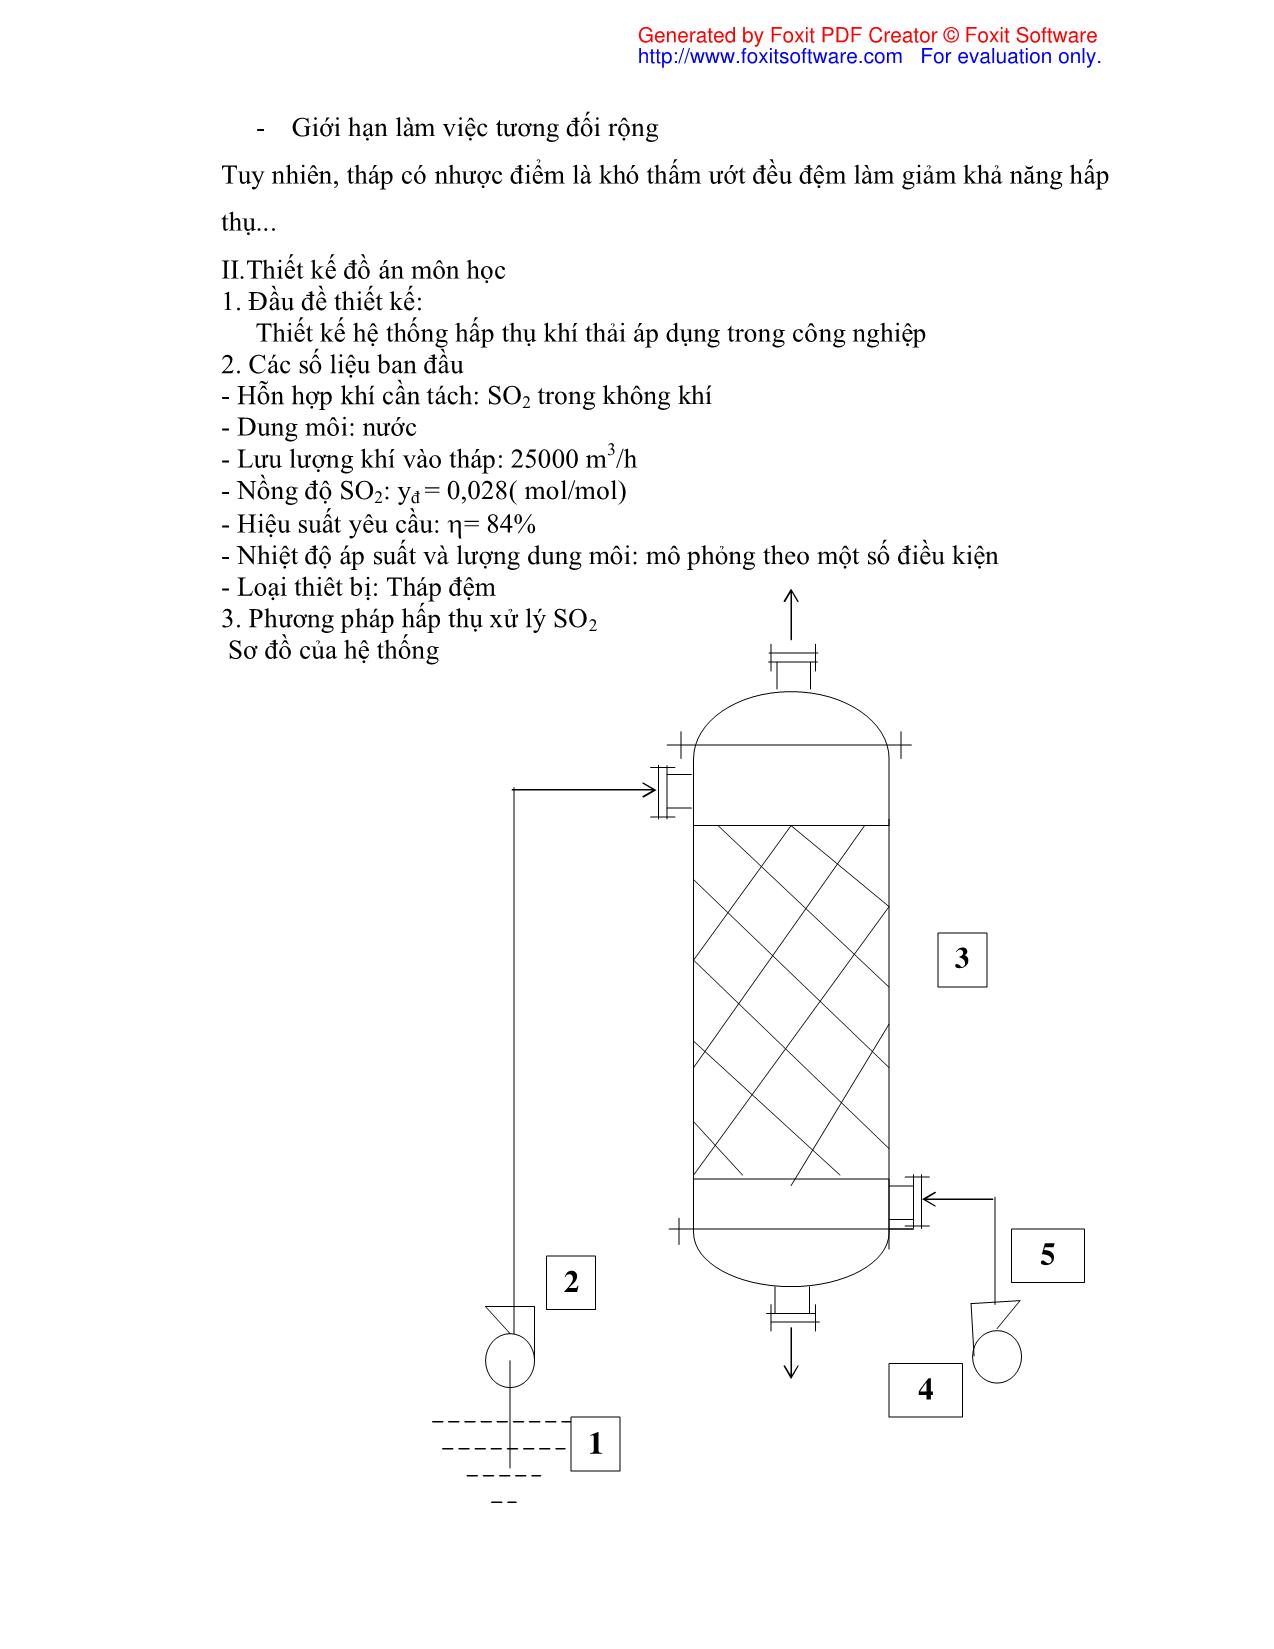 Đồ án Tính toán thiết kế hệ thống hấp thụ khí SO2 trang 5